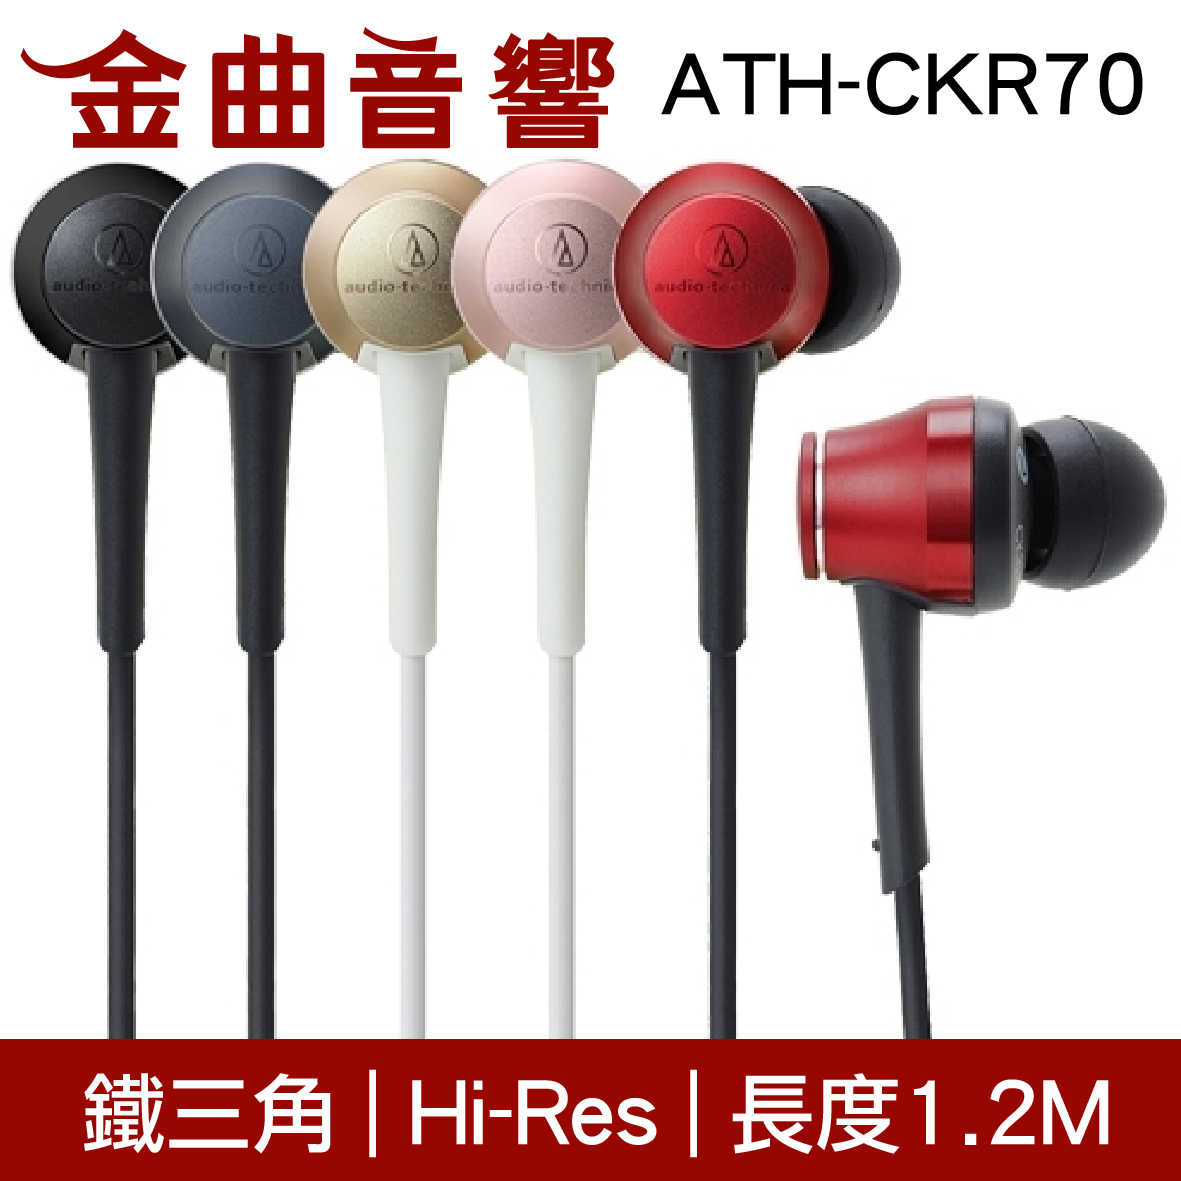 鐵三角 ATH-CKR70 璀璨紅 耳道式耳機 | 金曲音響